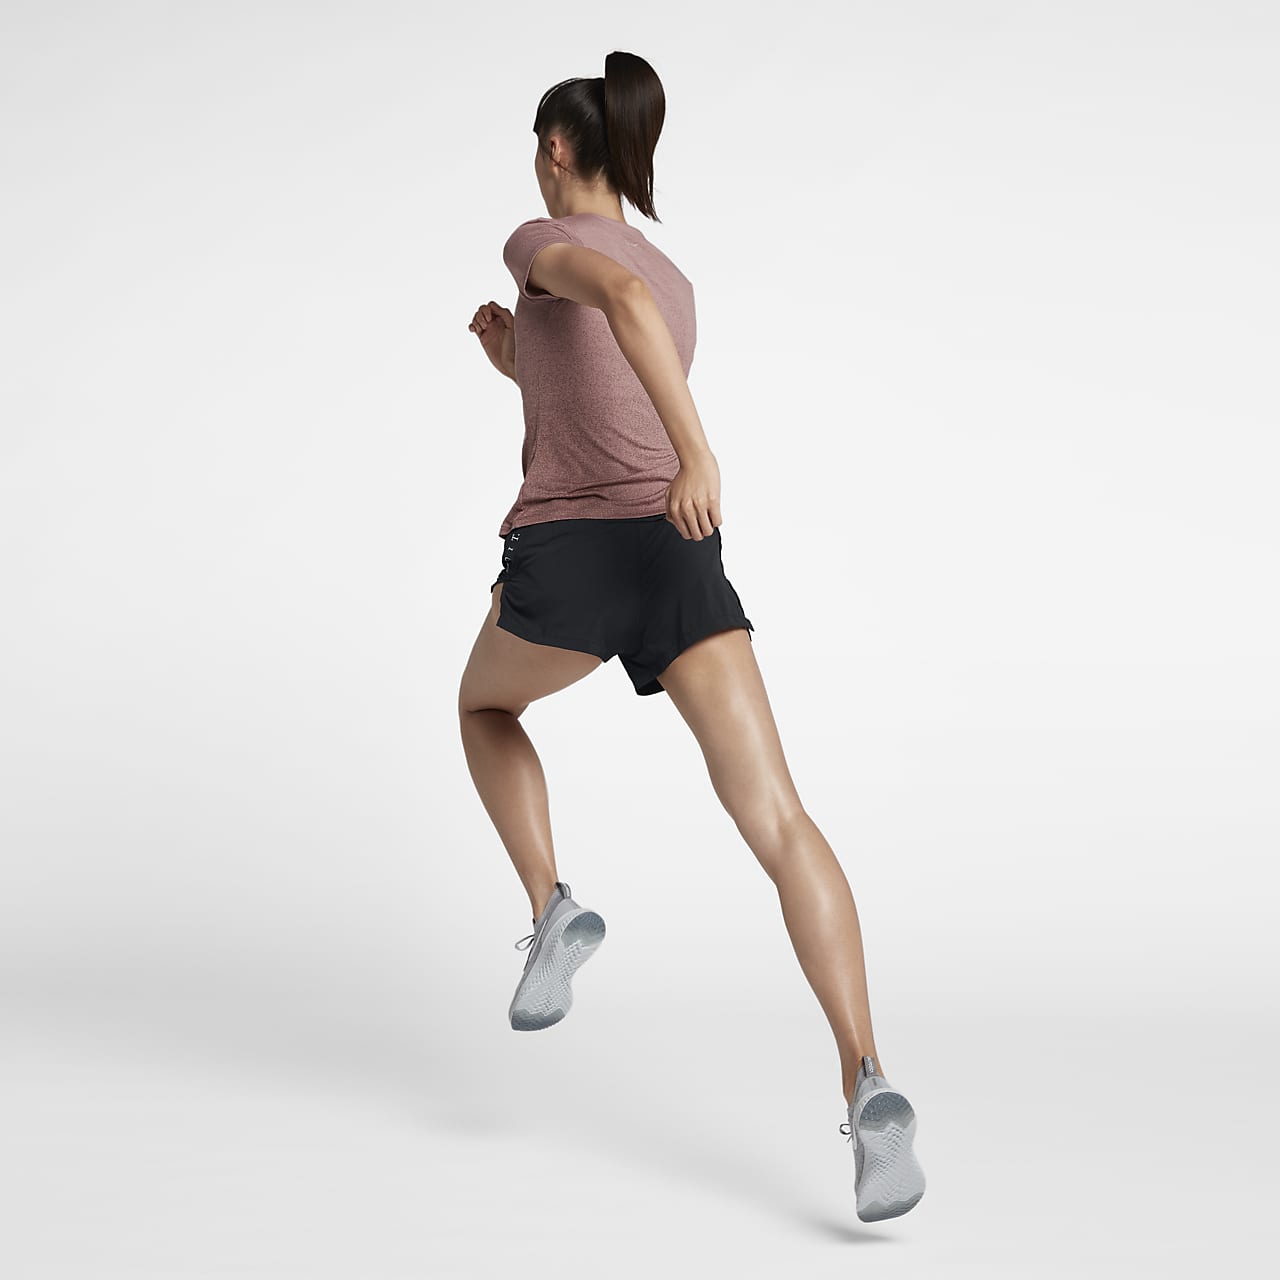 nike elevate women's running shorts